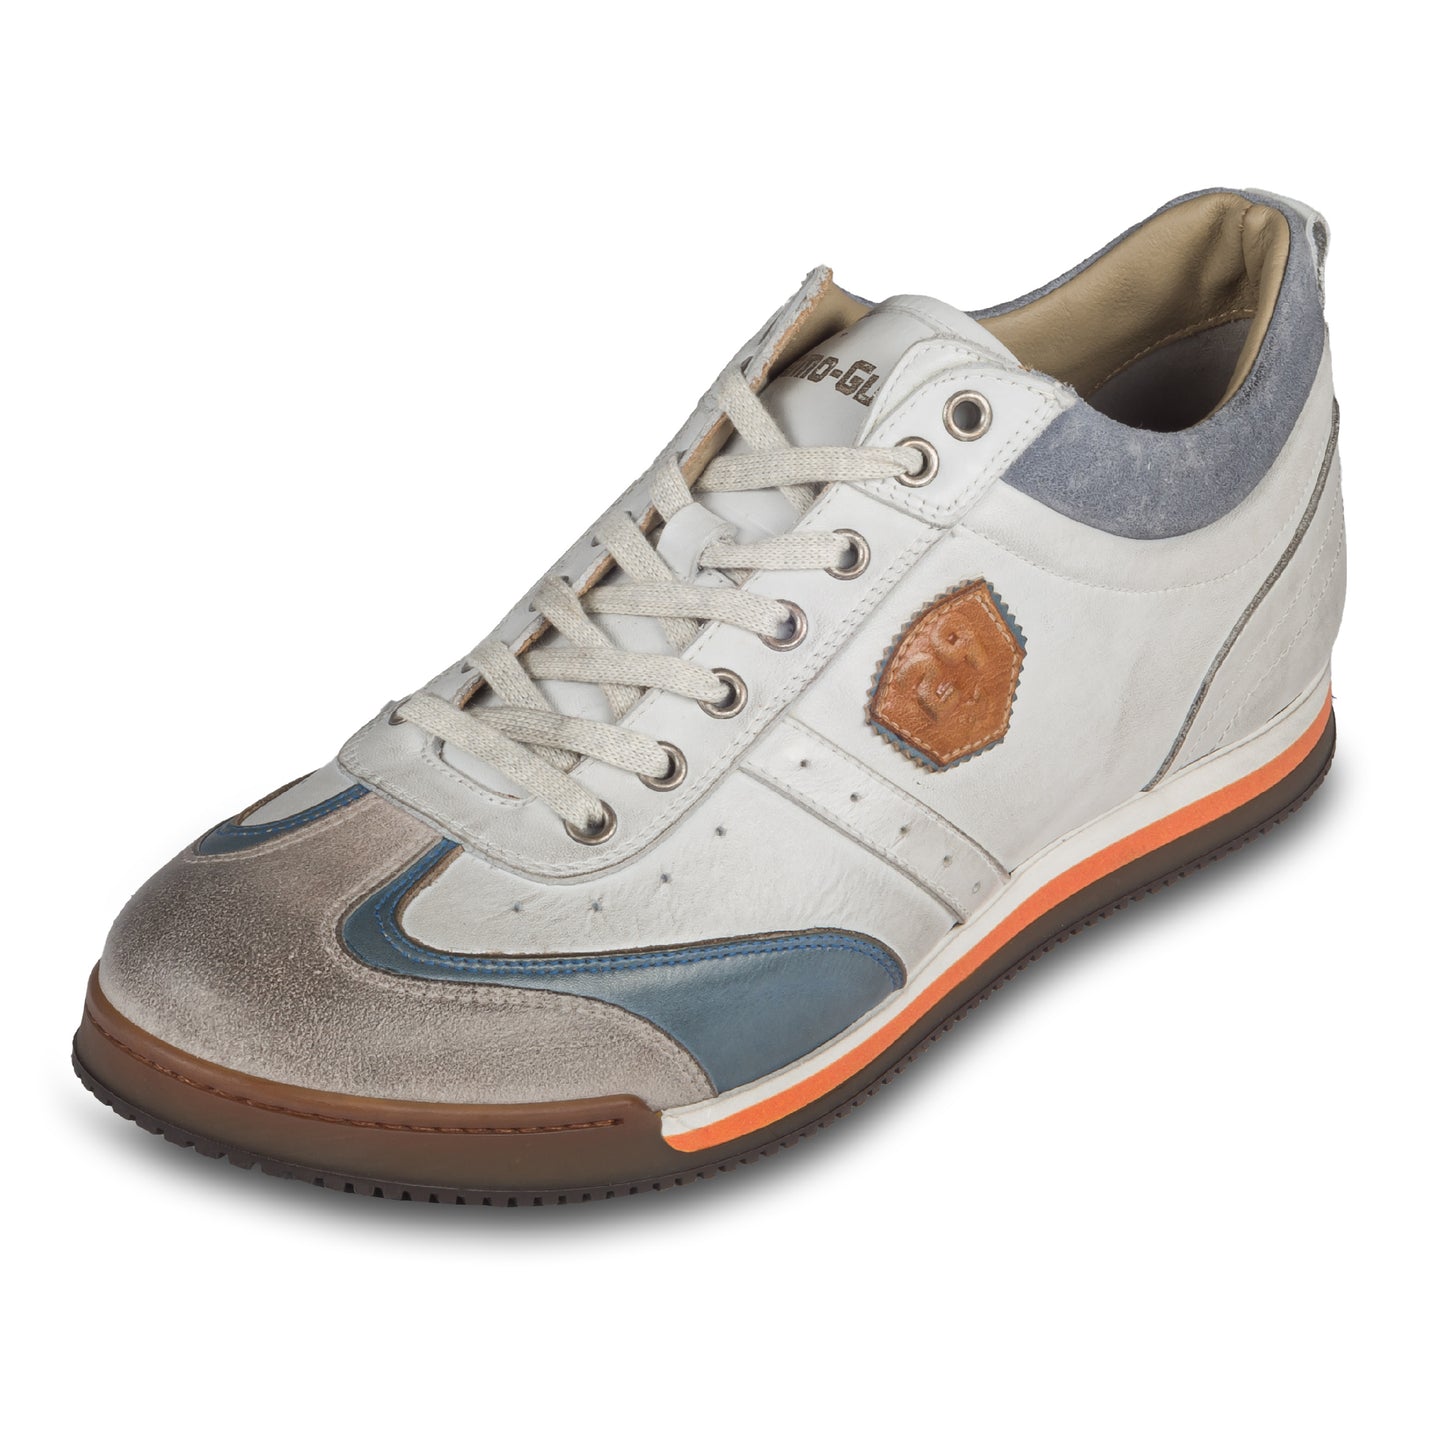 KAMO-GUTSU Herren Leder Sneaker weiß / grau / blau, Retro-Optik. Modell SCUDO-005 bianco combi. Handgefertigt in Italien. Schräge Ansicht linker Schuh. Graue Schnürbänder.